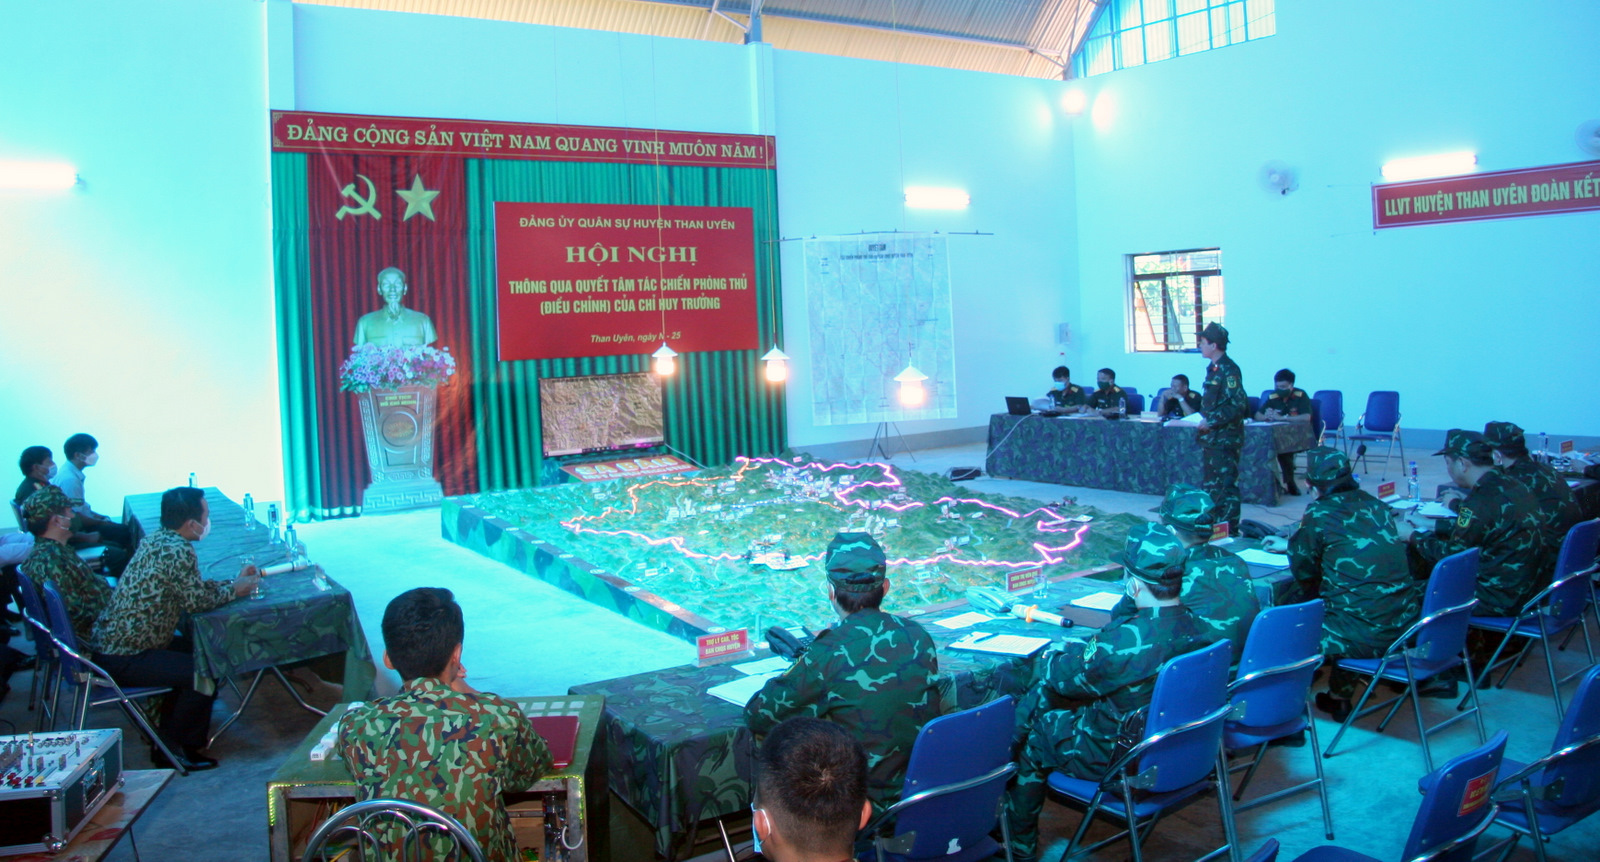 Hội nghị Đảng ủy quân sự huyện thông qua quyết tâm tác chiến phòng thủ (điều chỉnh) của Chỉ huy trưởng Ban Chỉ huy Quân sự huyện trên sa bàn diễn tập.